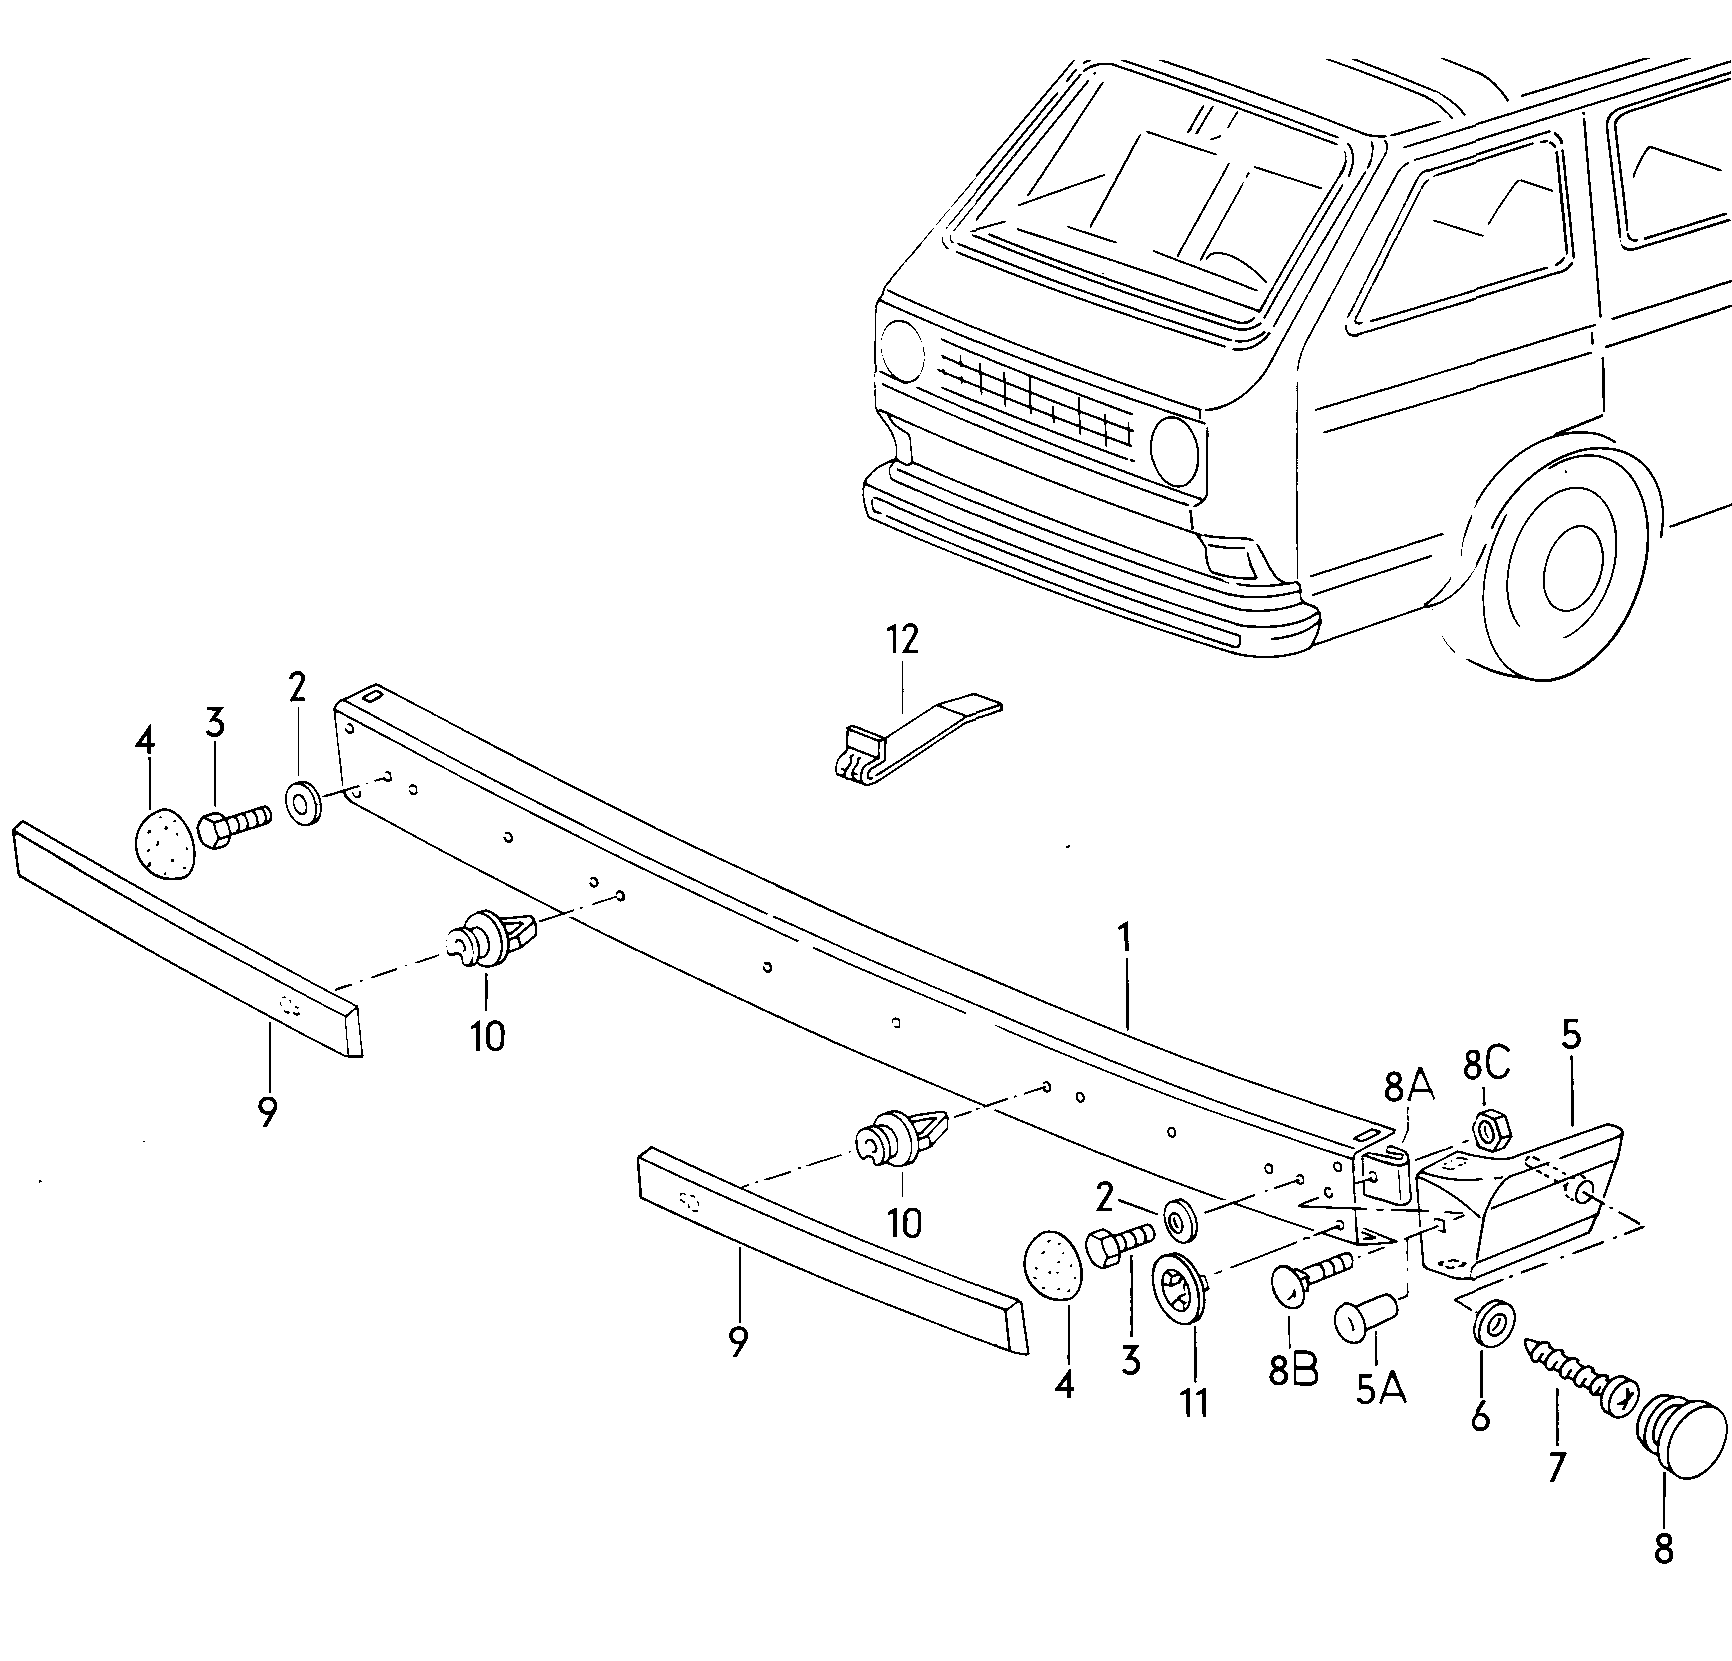 parachoques delantero - Typ 2/syncro - t2